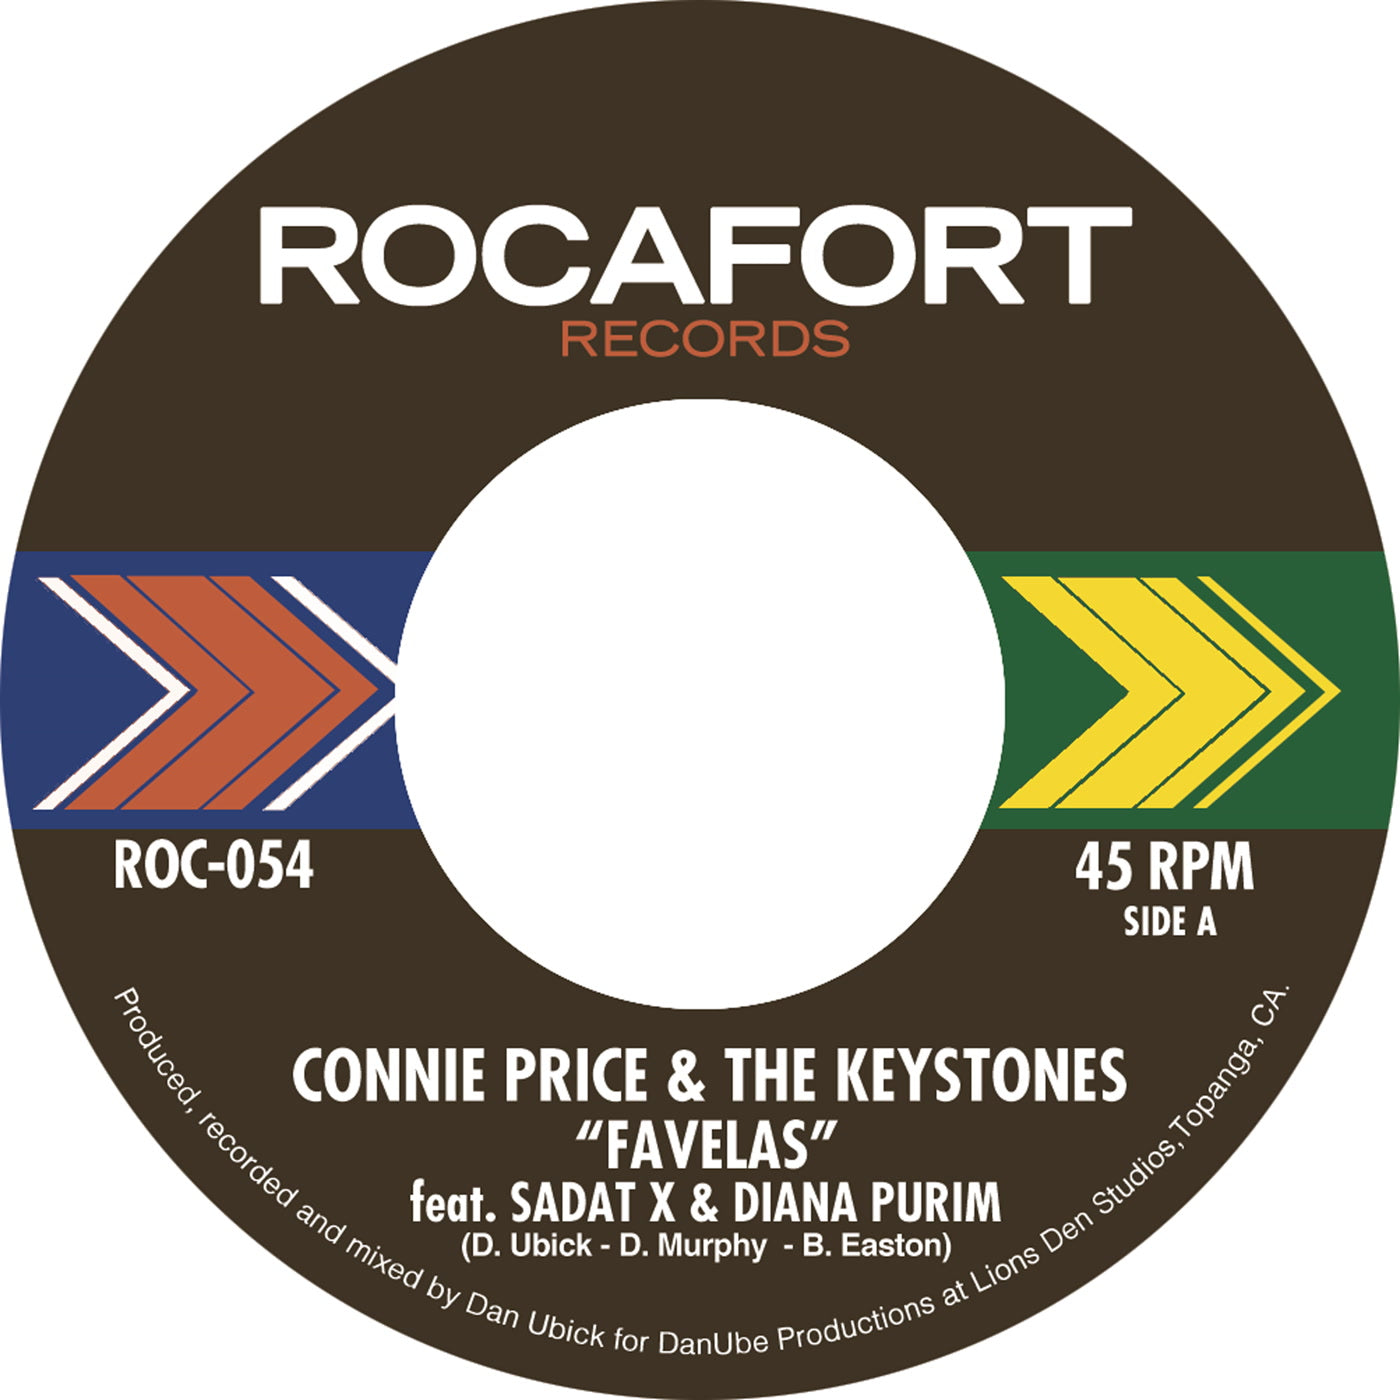 Connie Price & The Keystones - Favelas (feat. Sadat X & Diana Purim) b/w Inst